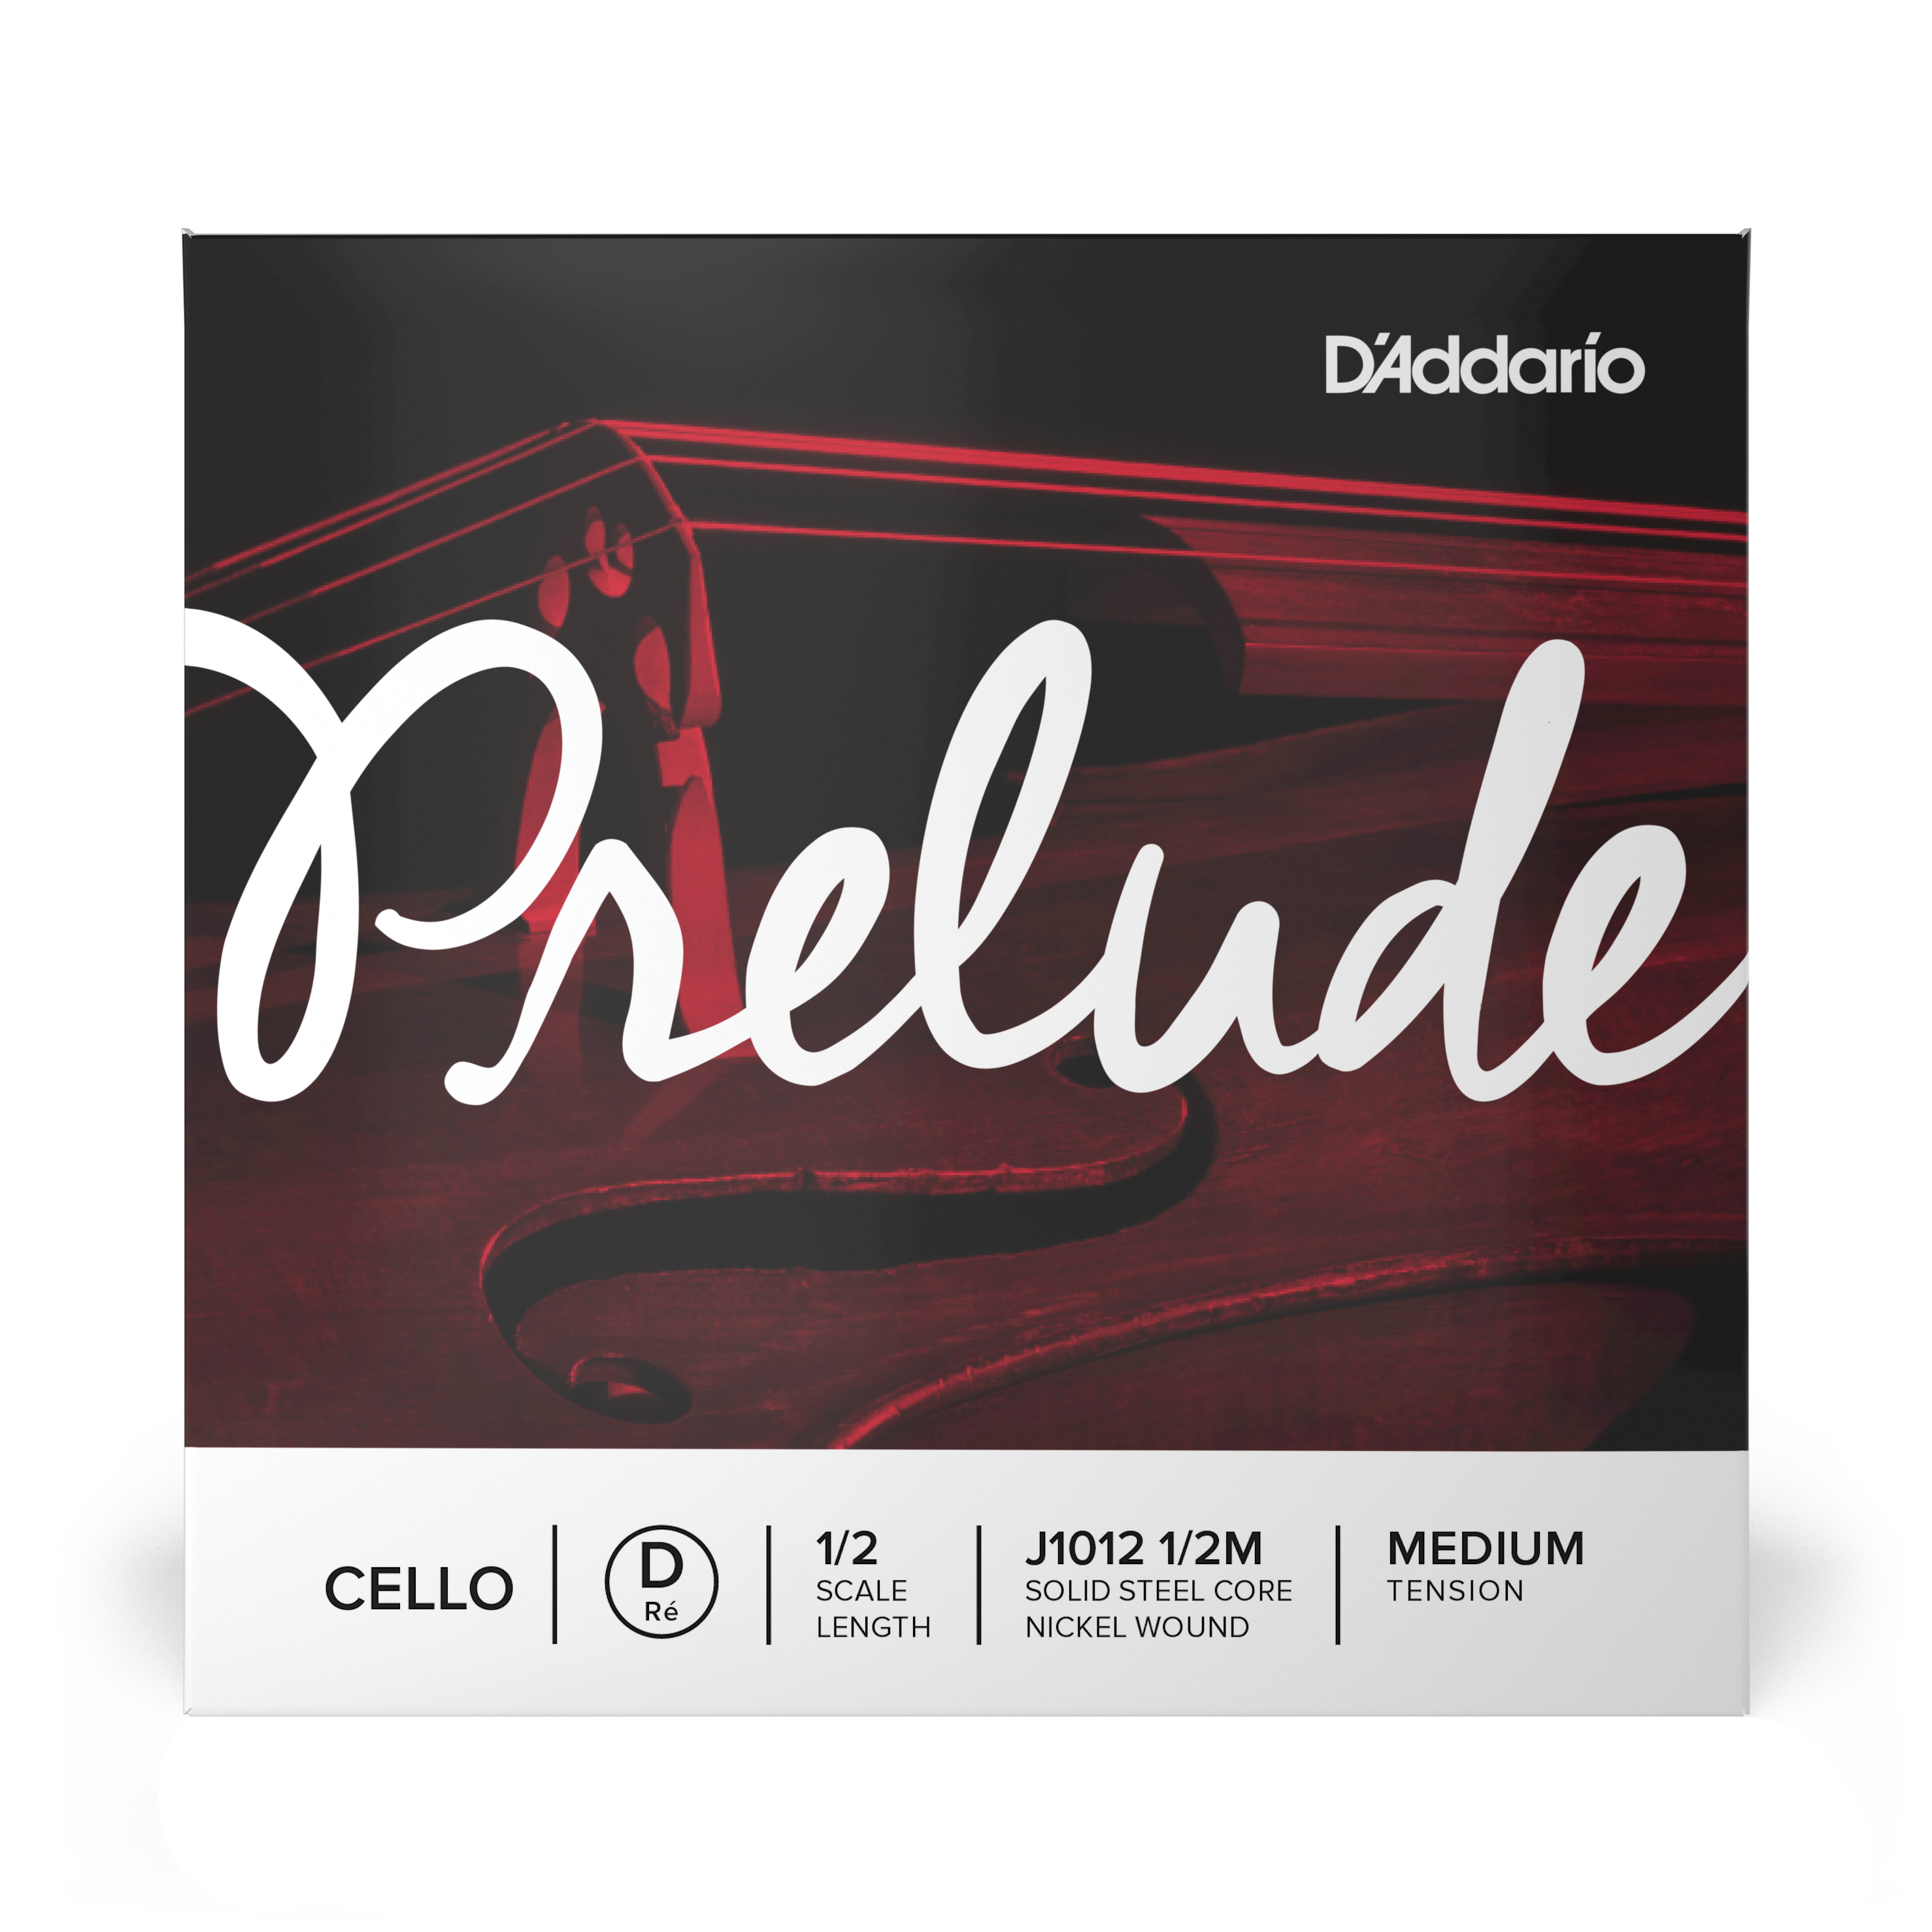 Daddario orchestral it J1012 1/2m corda singola re d'addario prelude per violoncello, scala 1/2, tensione media